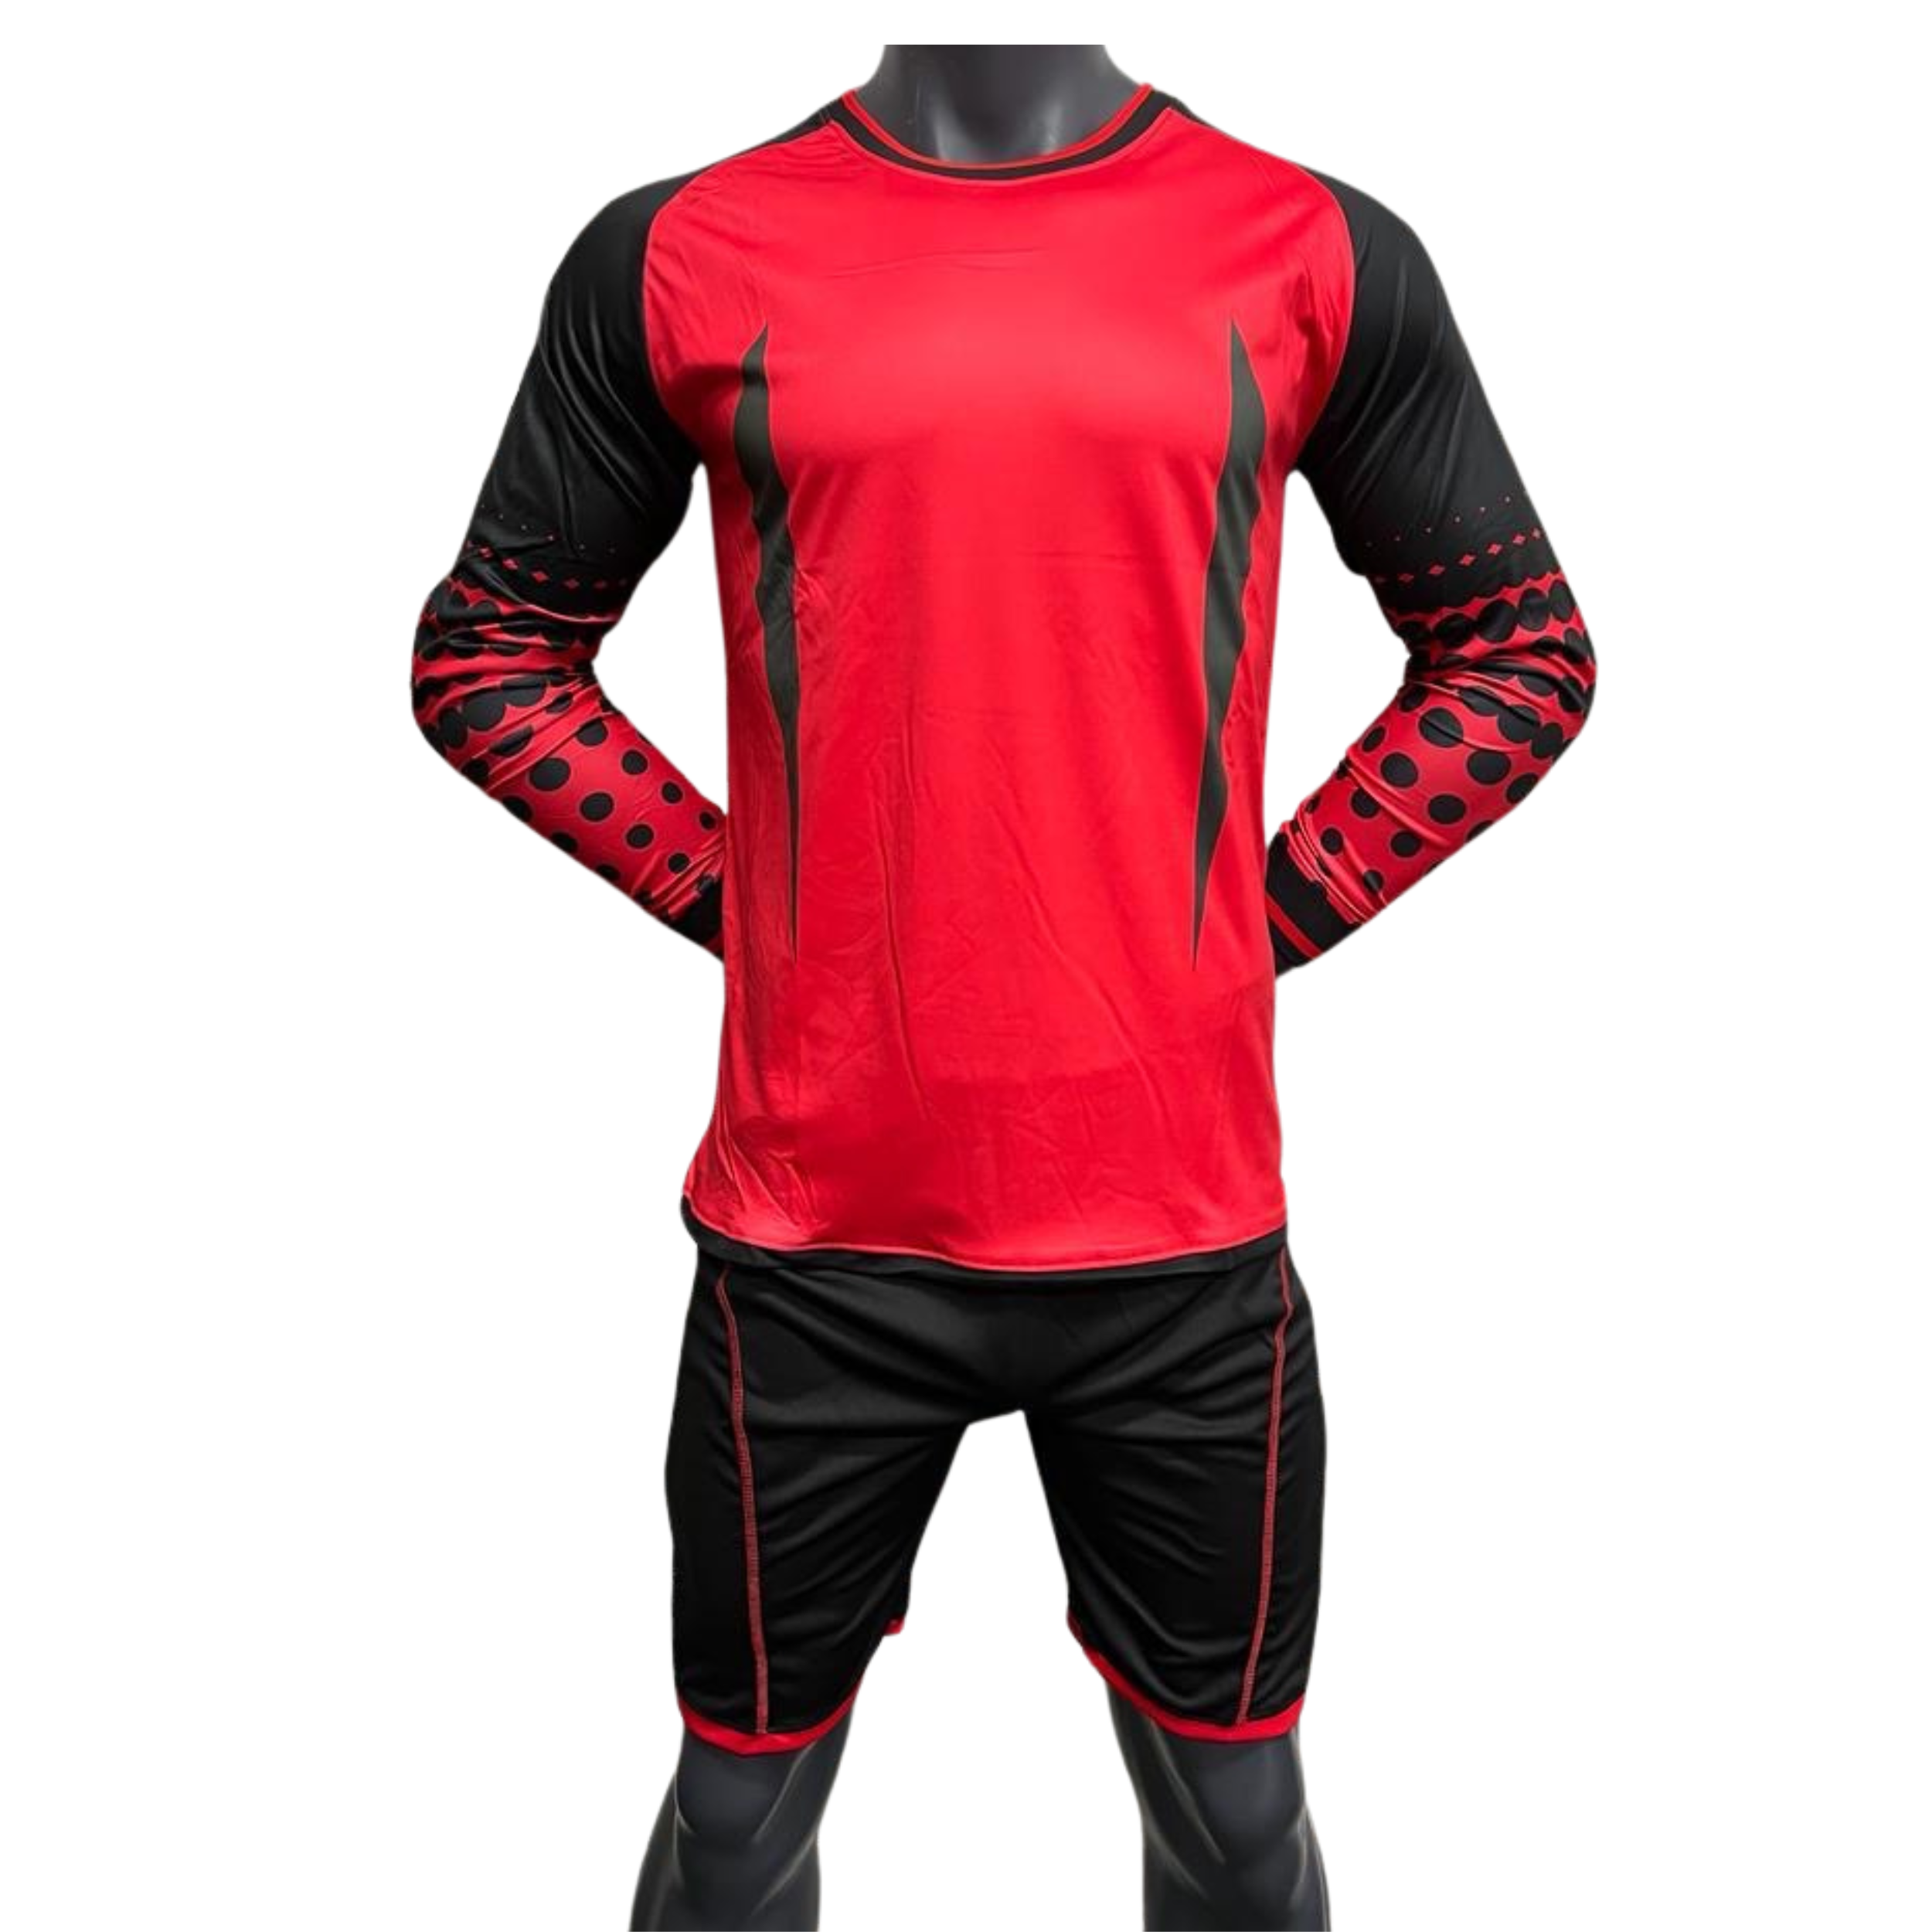 Red Goalkeeper Uniform